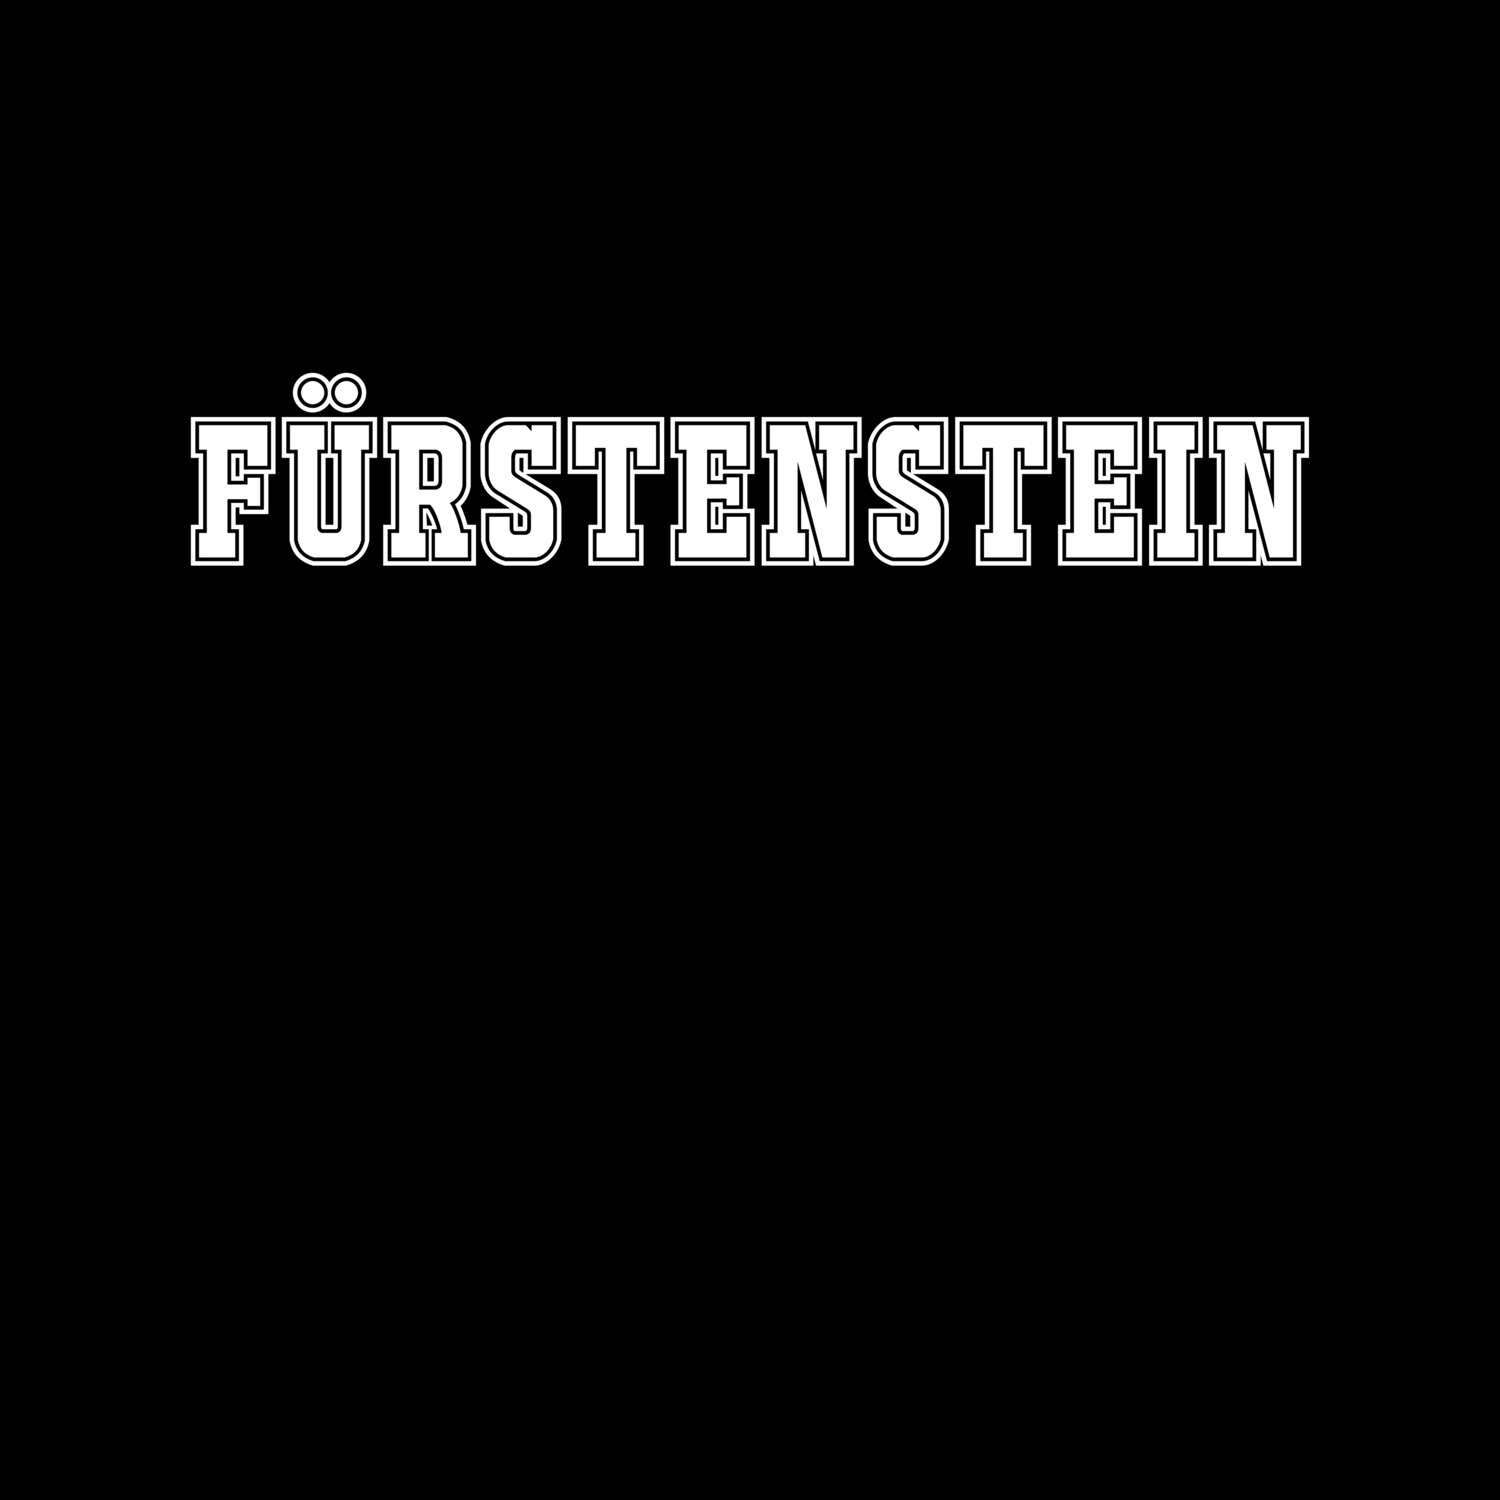 Fürstenstein T-Shirt »Classic«